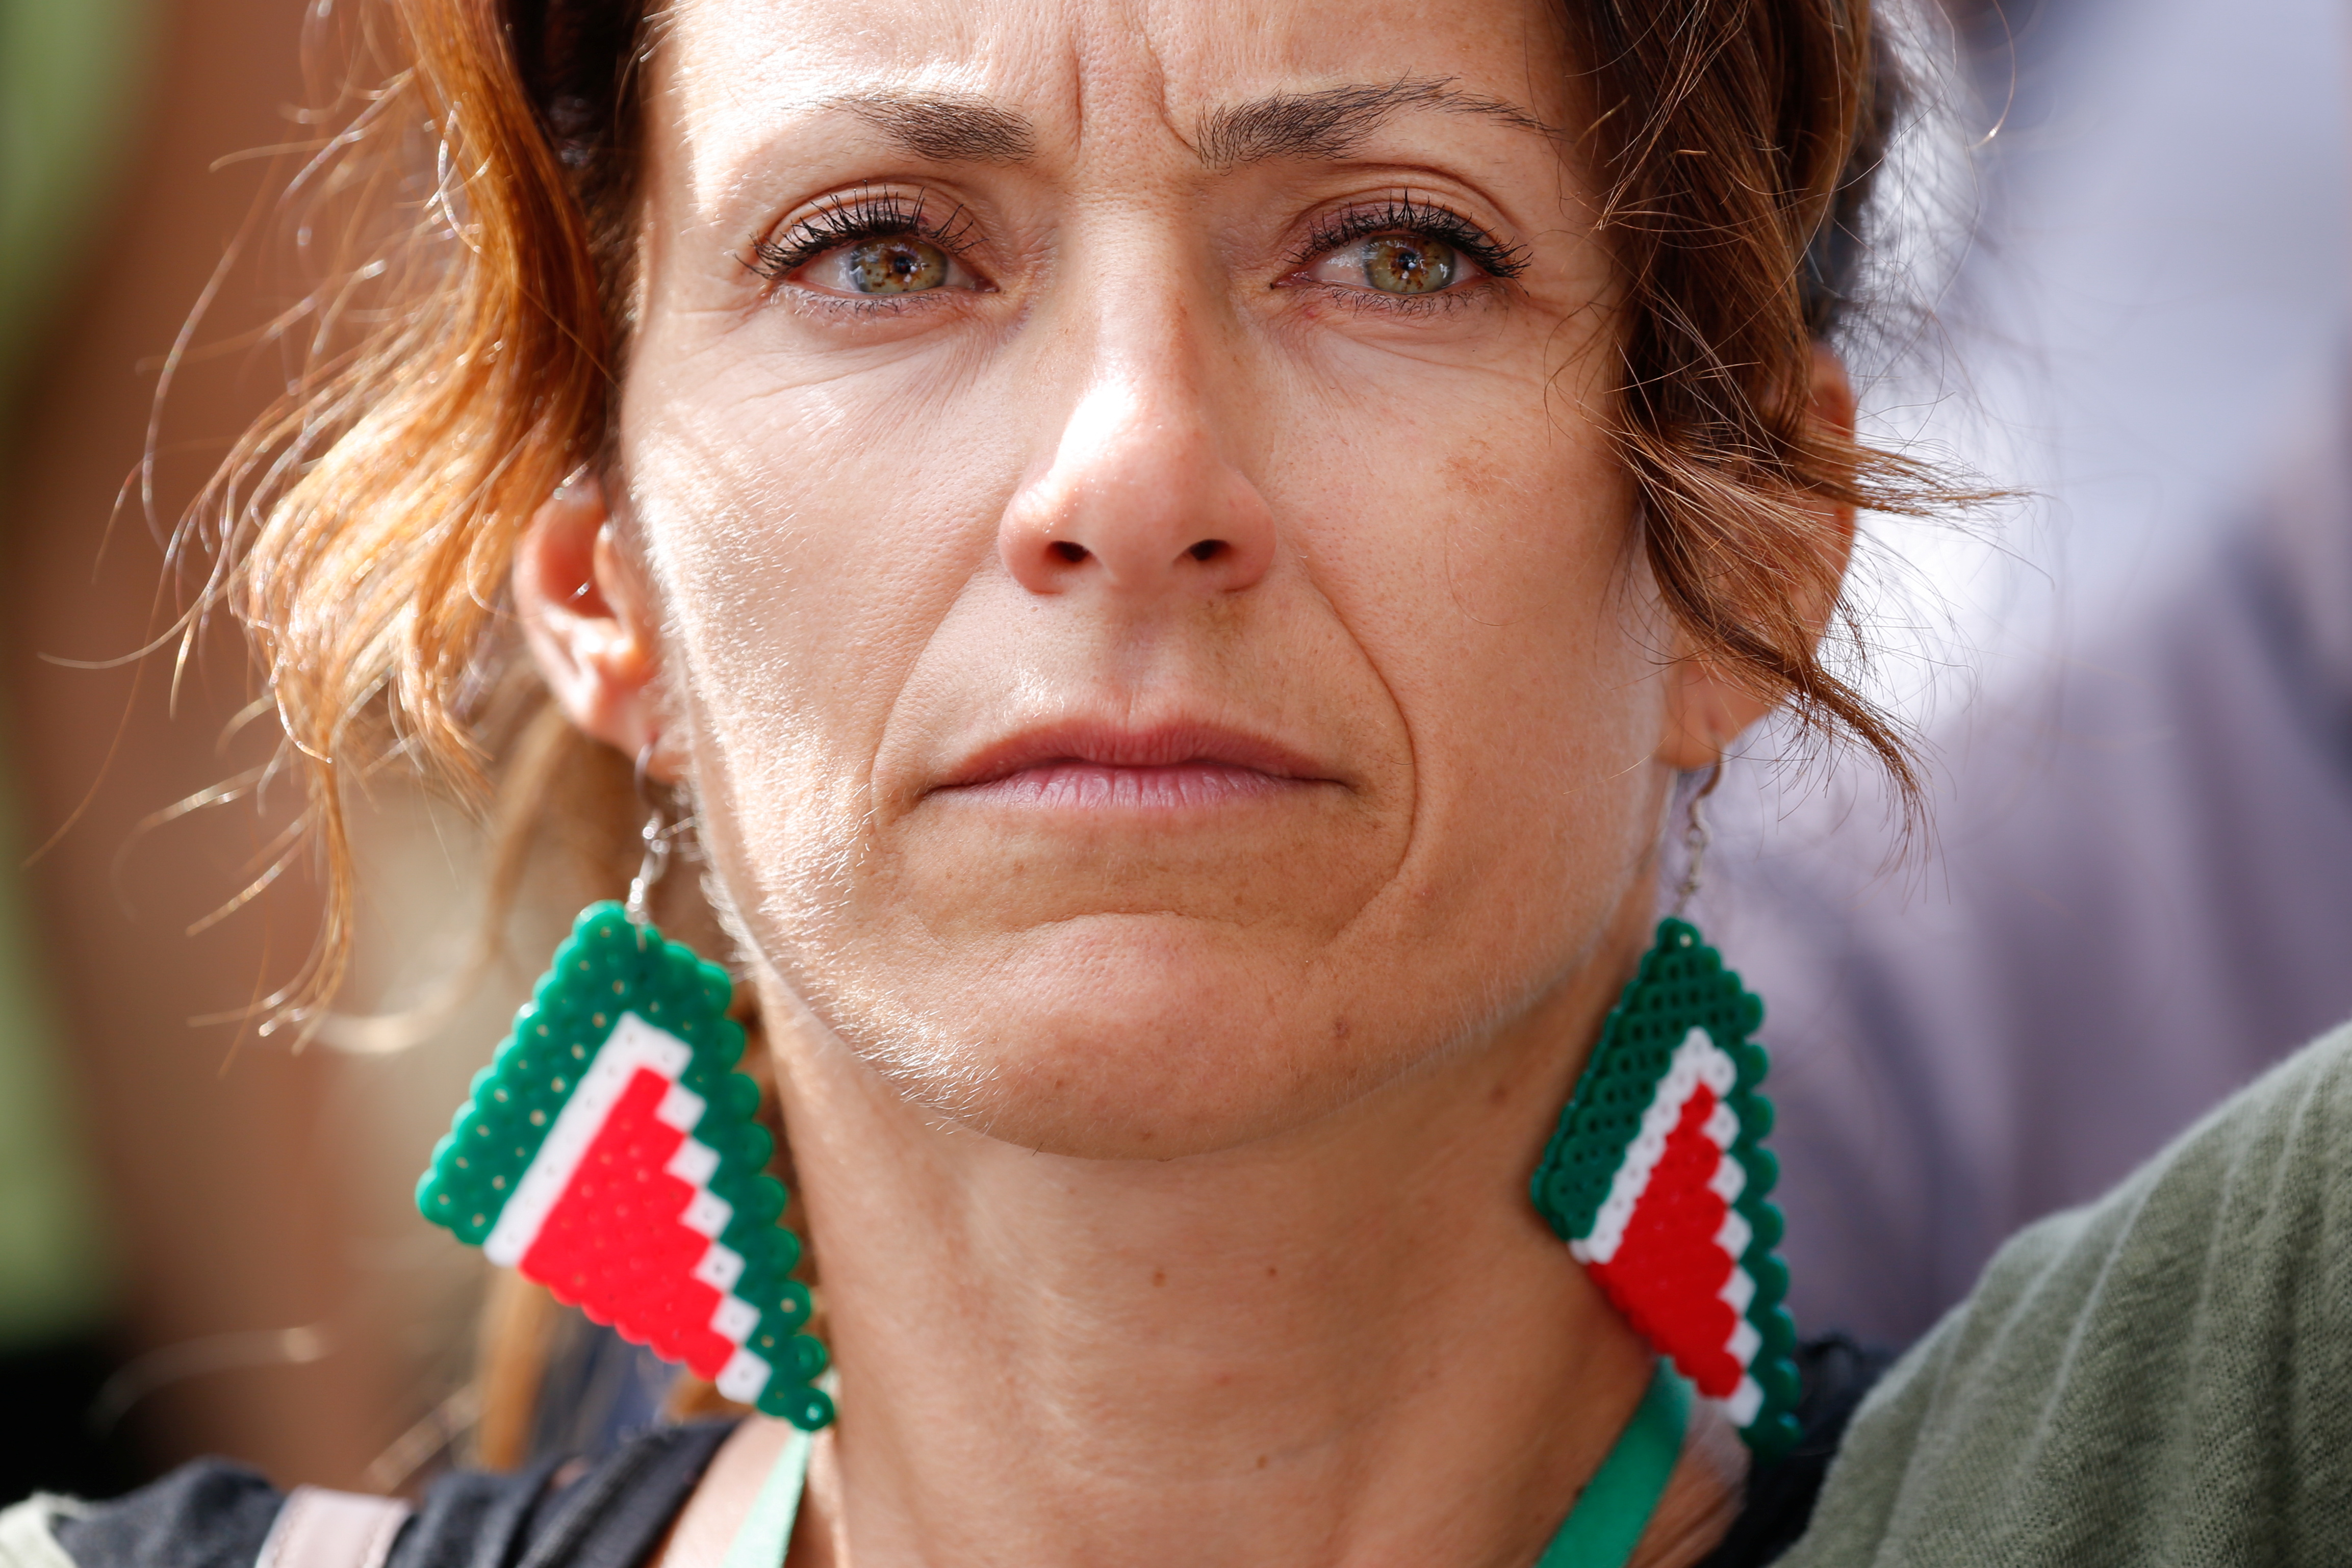 Un manifestante lleva pendientes con el logo de Alitalia, durante una protesta contra la nueva aerolínea estatal Italia Trasporto Aereo (ITA), sucesora de Alitalia, en Roma, Italia, el 24 de septiembre de 2021. (REUTERS / Remo Casilli)